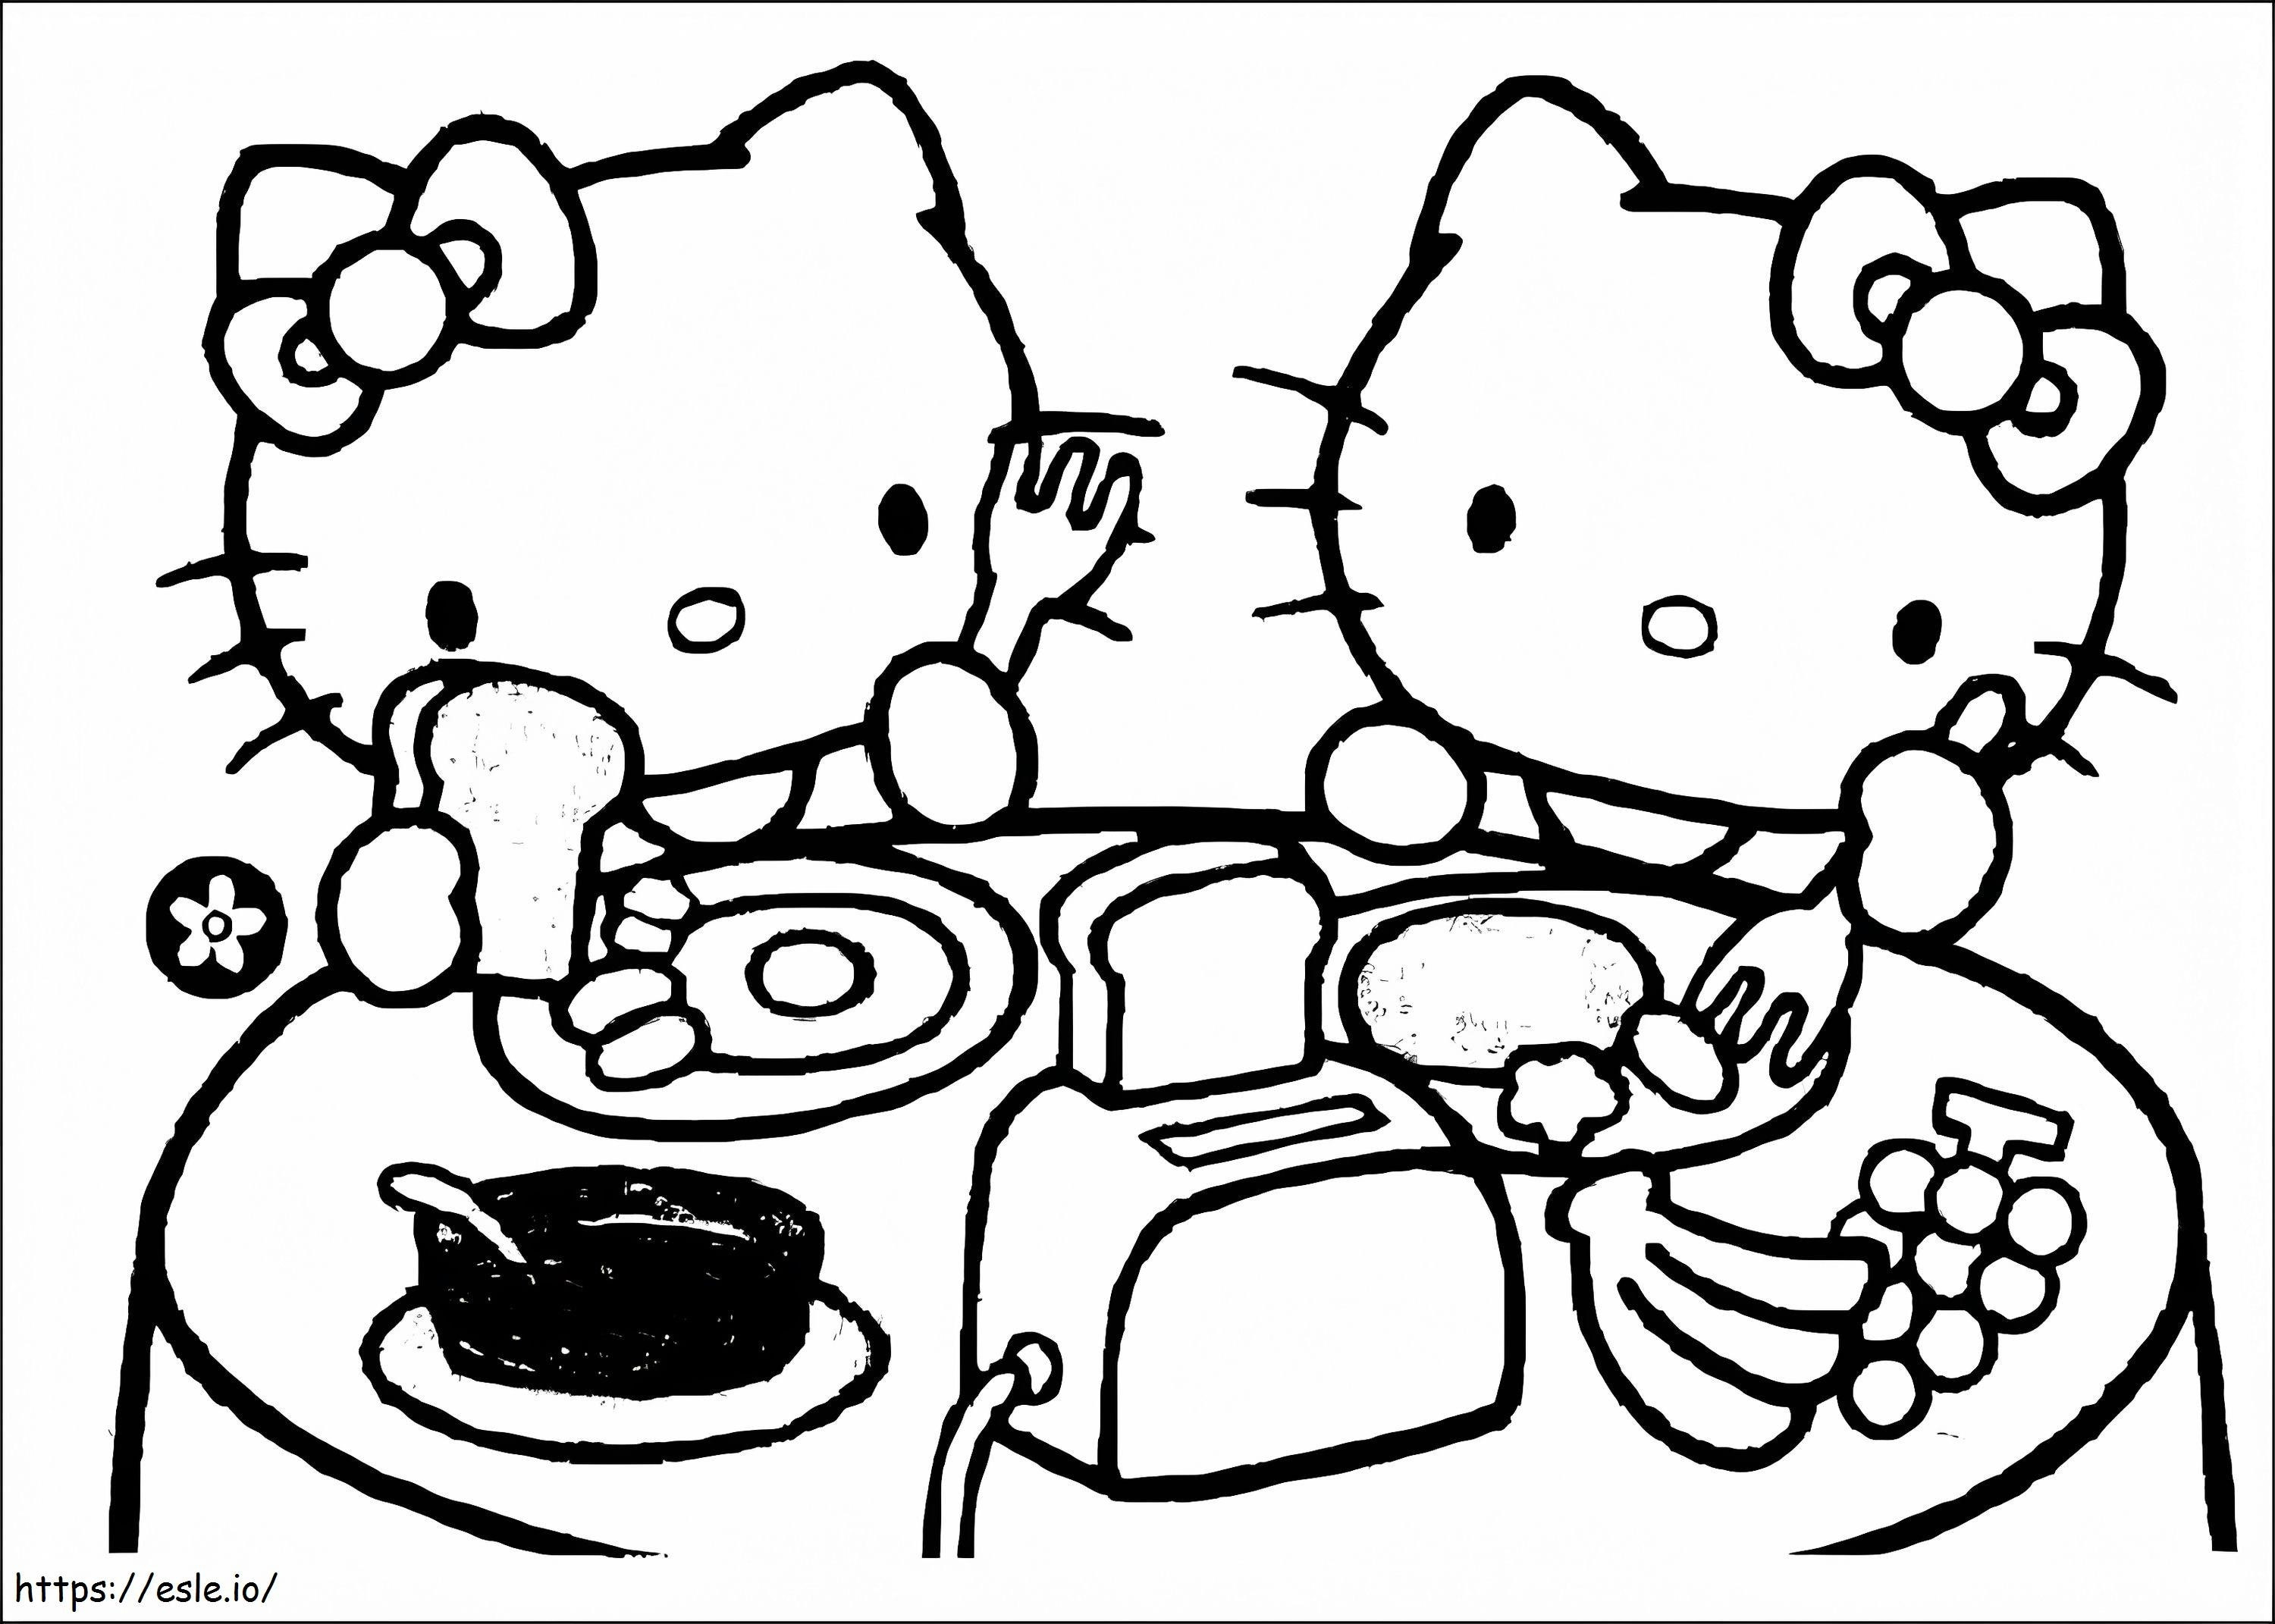 Coloriage Hello Kitty prenant son petit déjeuner à imprimer dessin